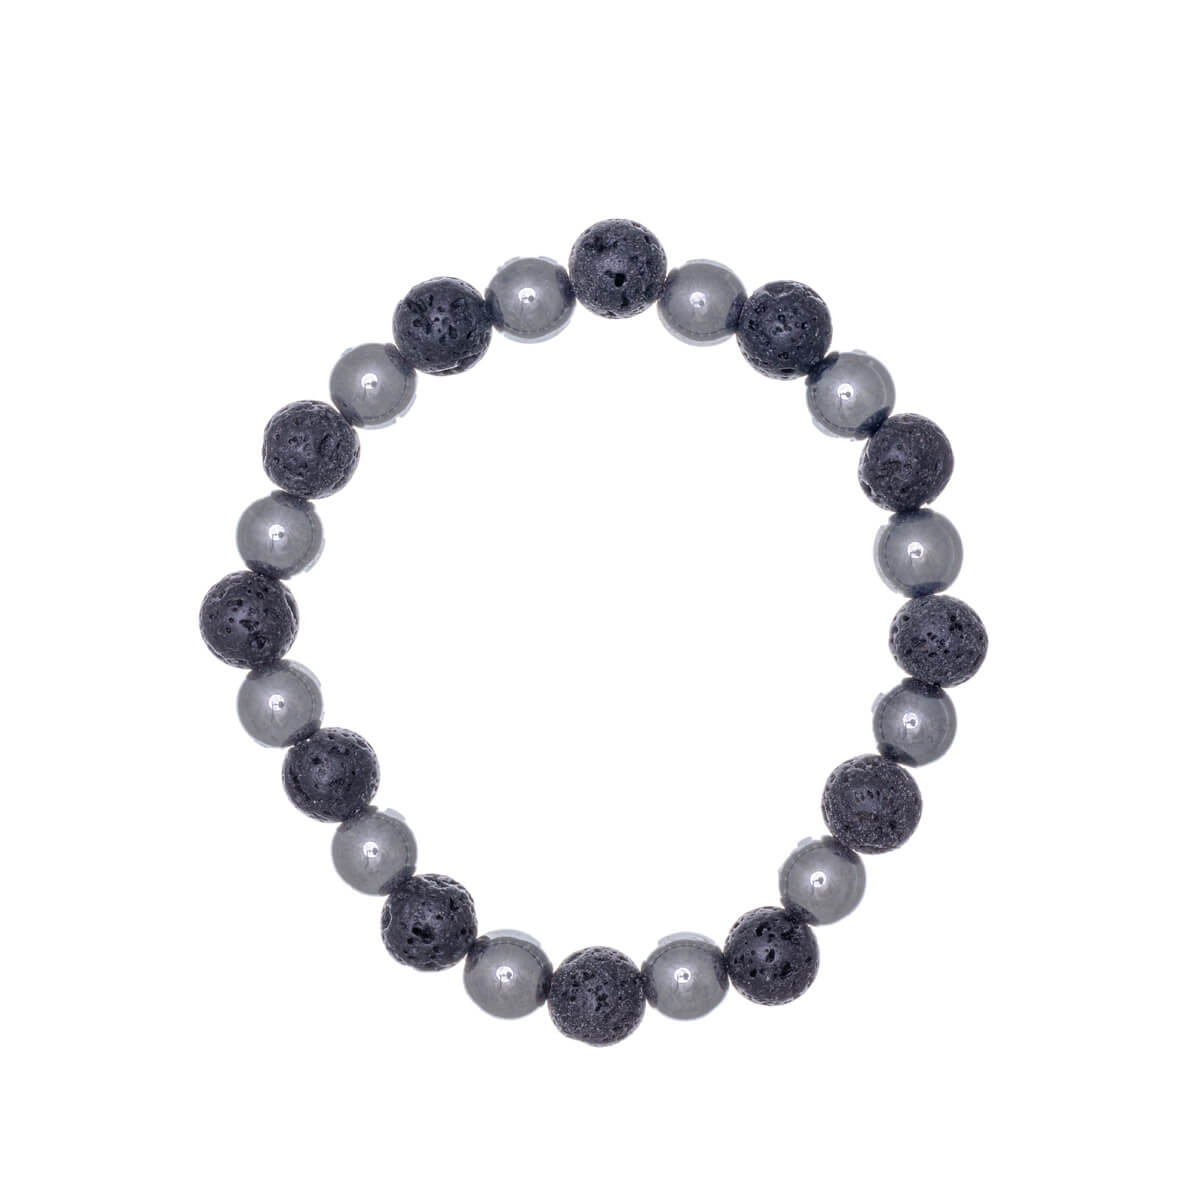 Elastic lava stone bracelet with hematite beads